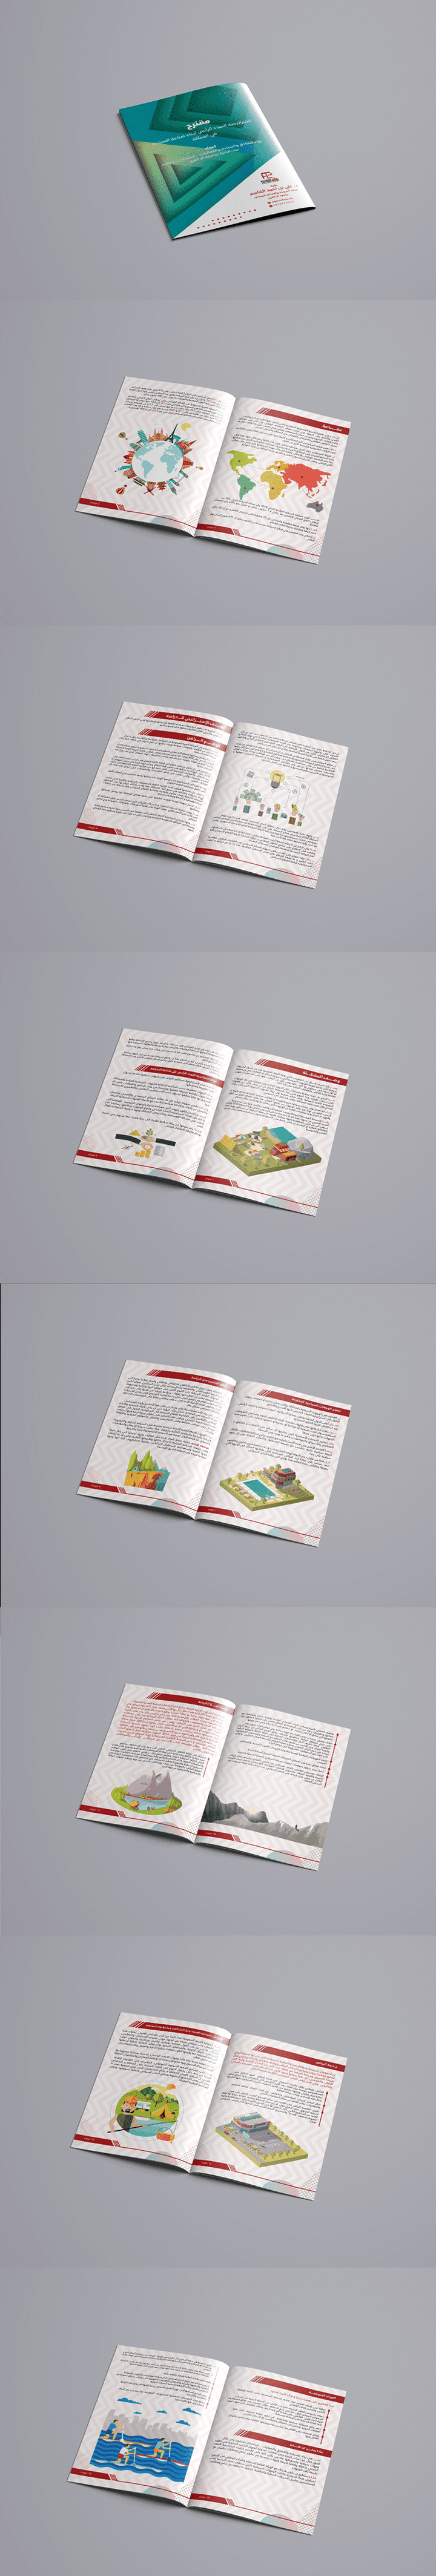 Brochure Design A4